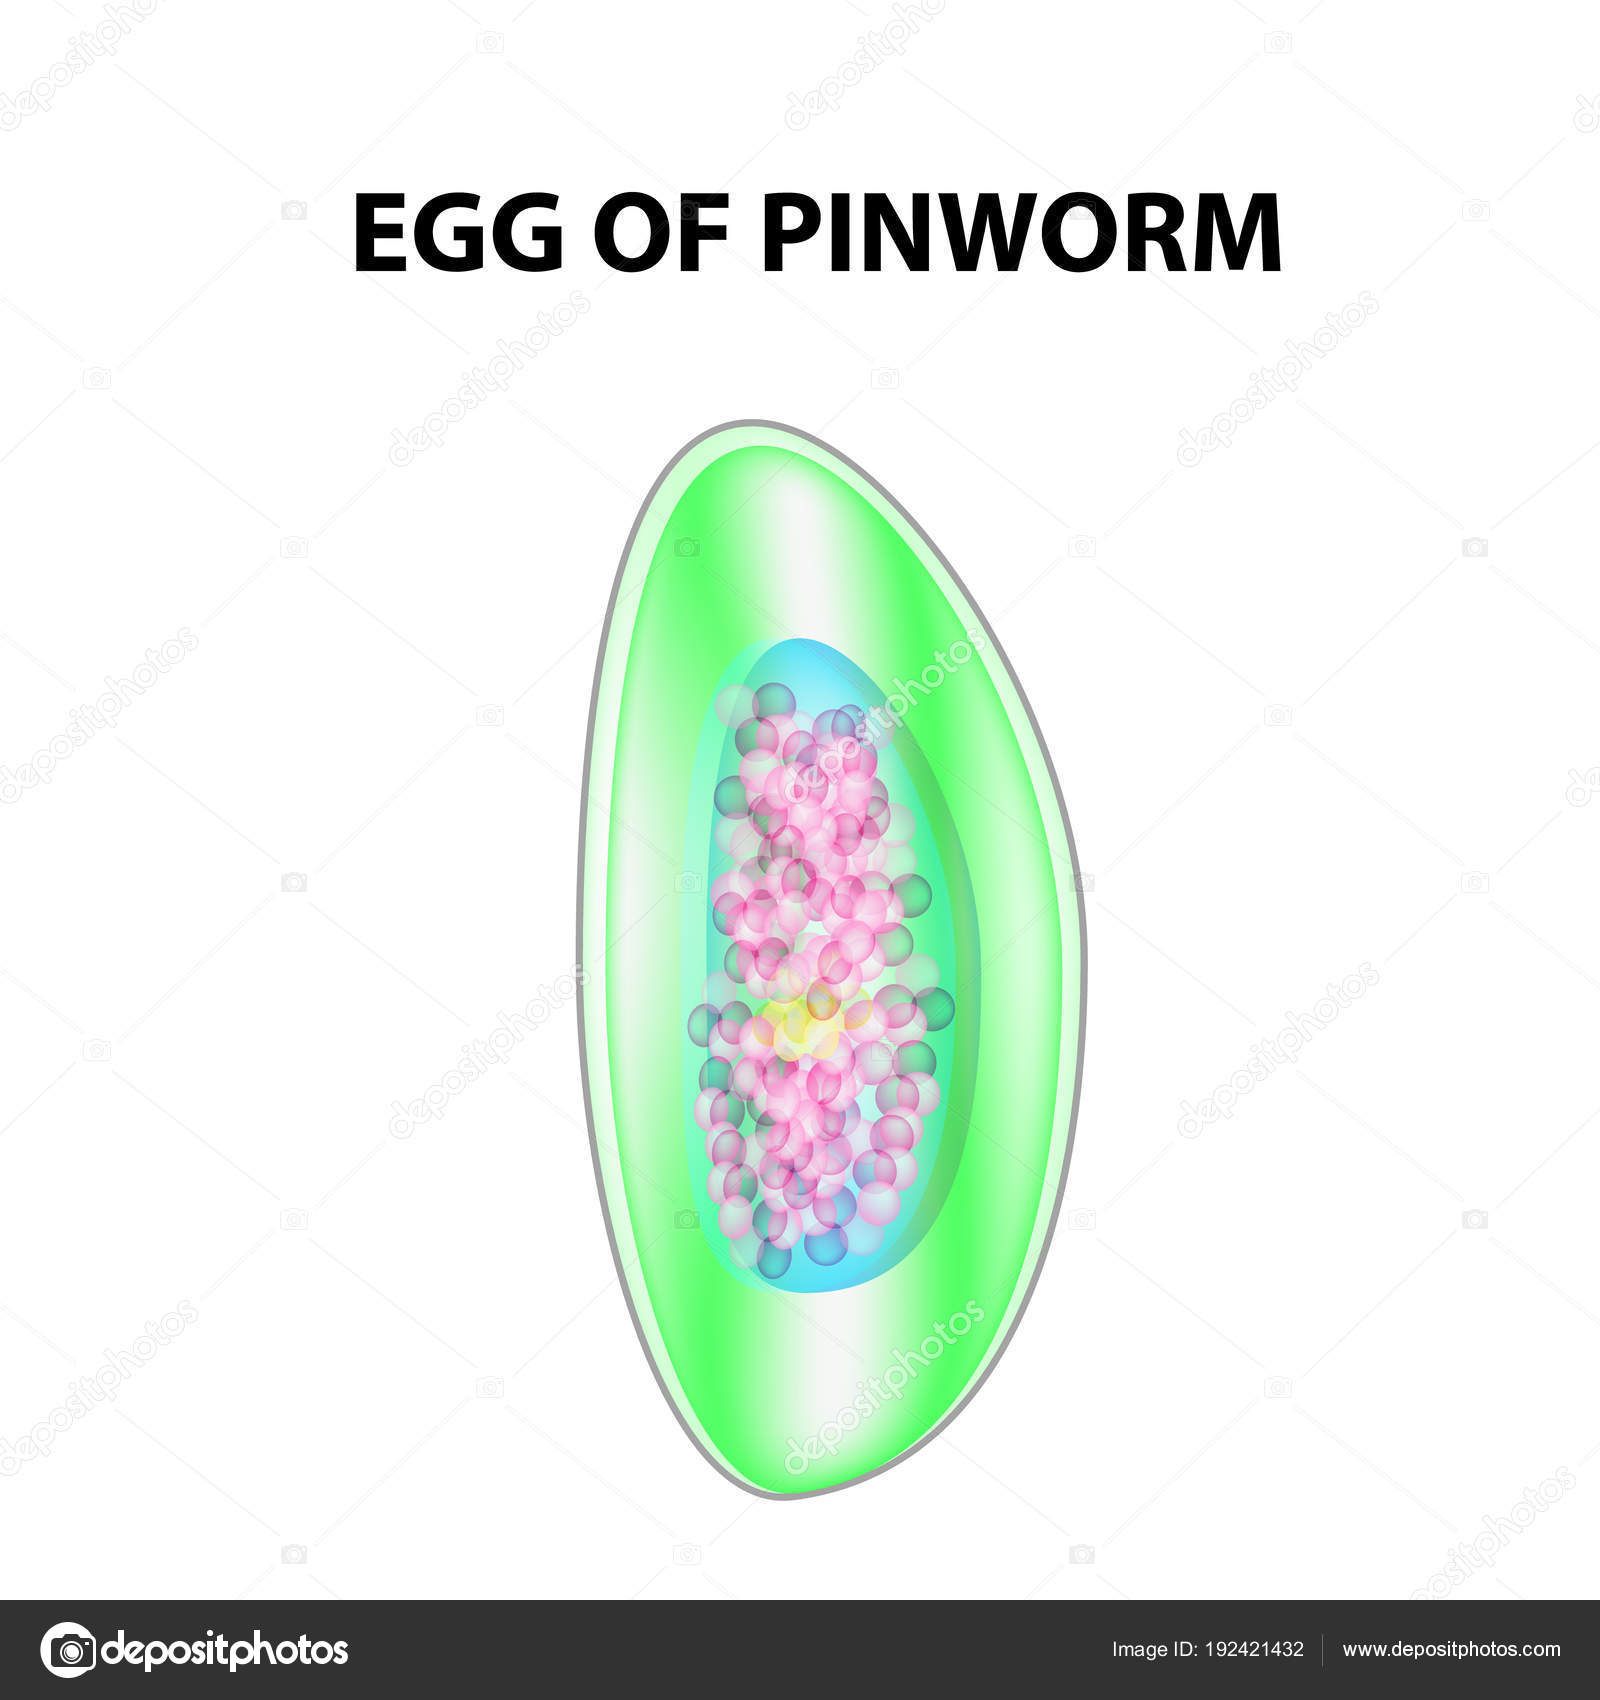 egy enterobiosis pinworms